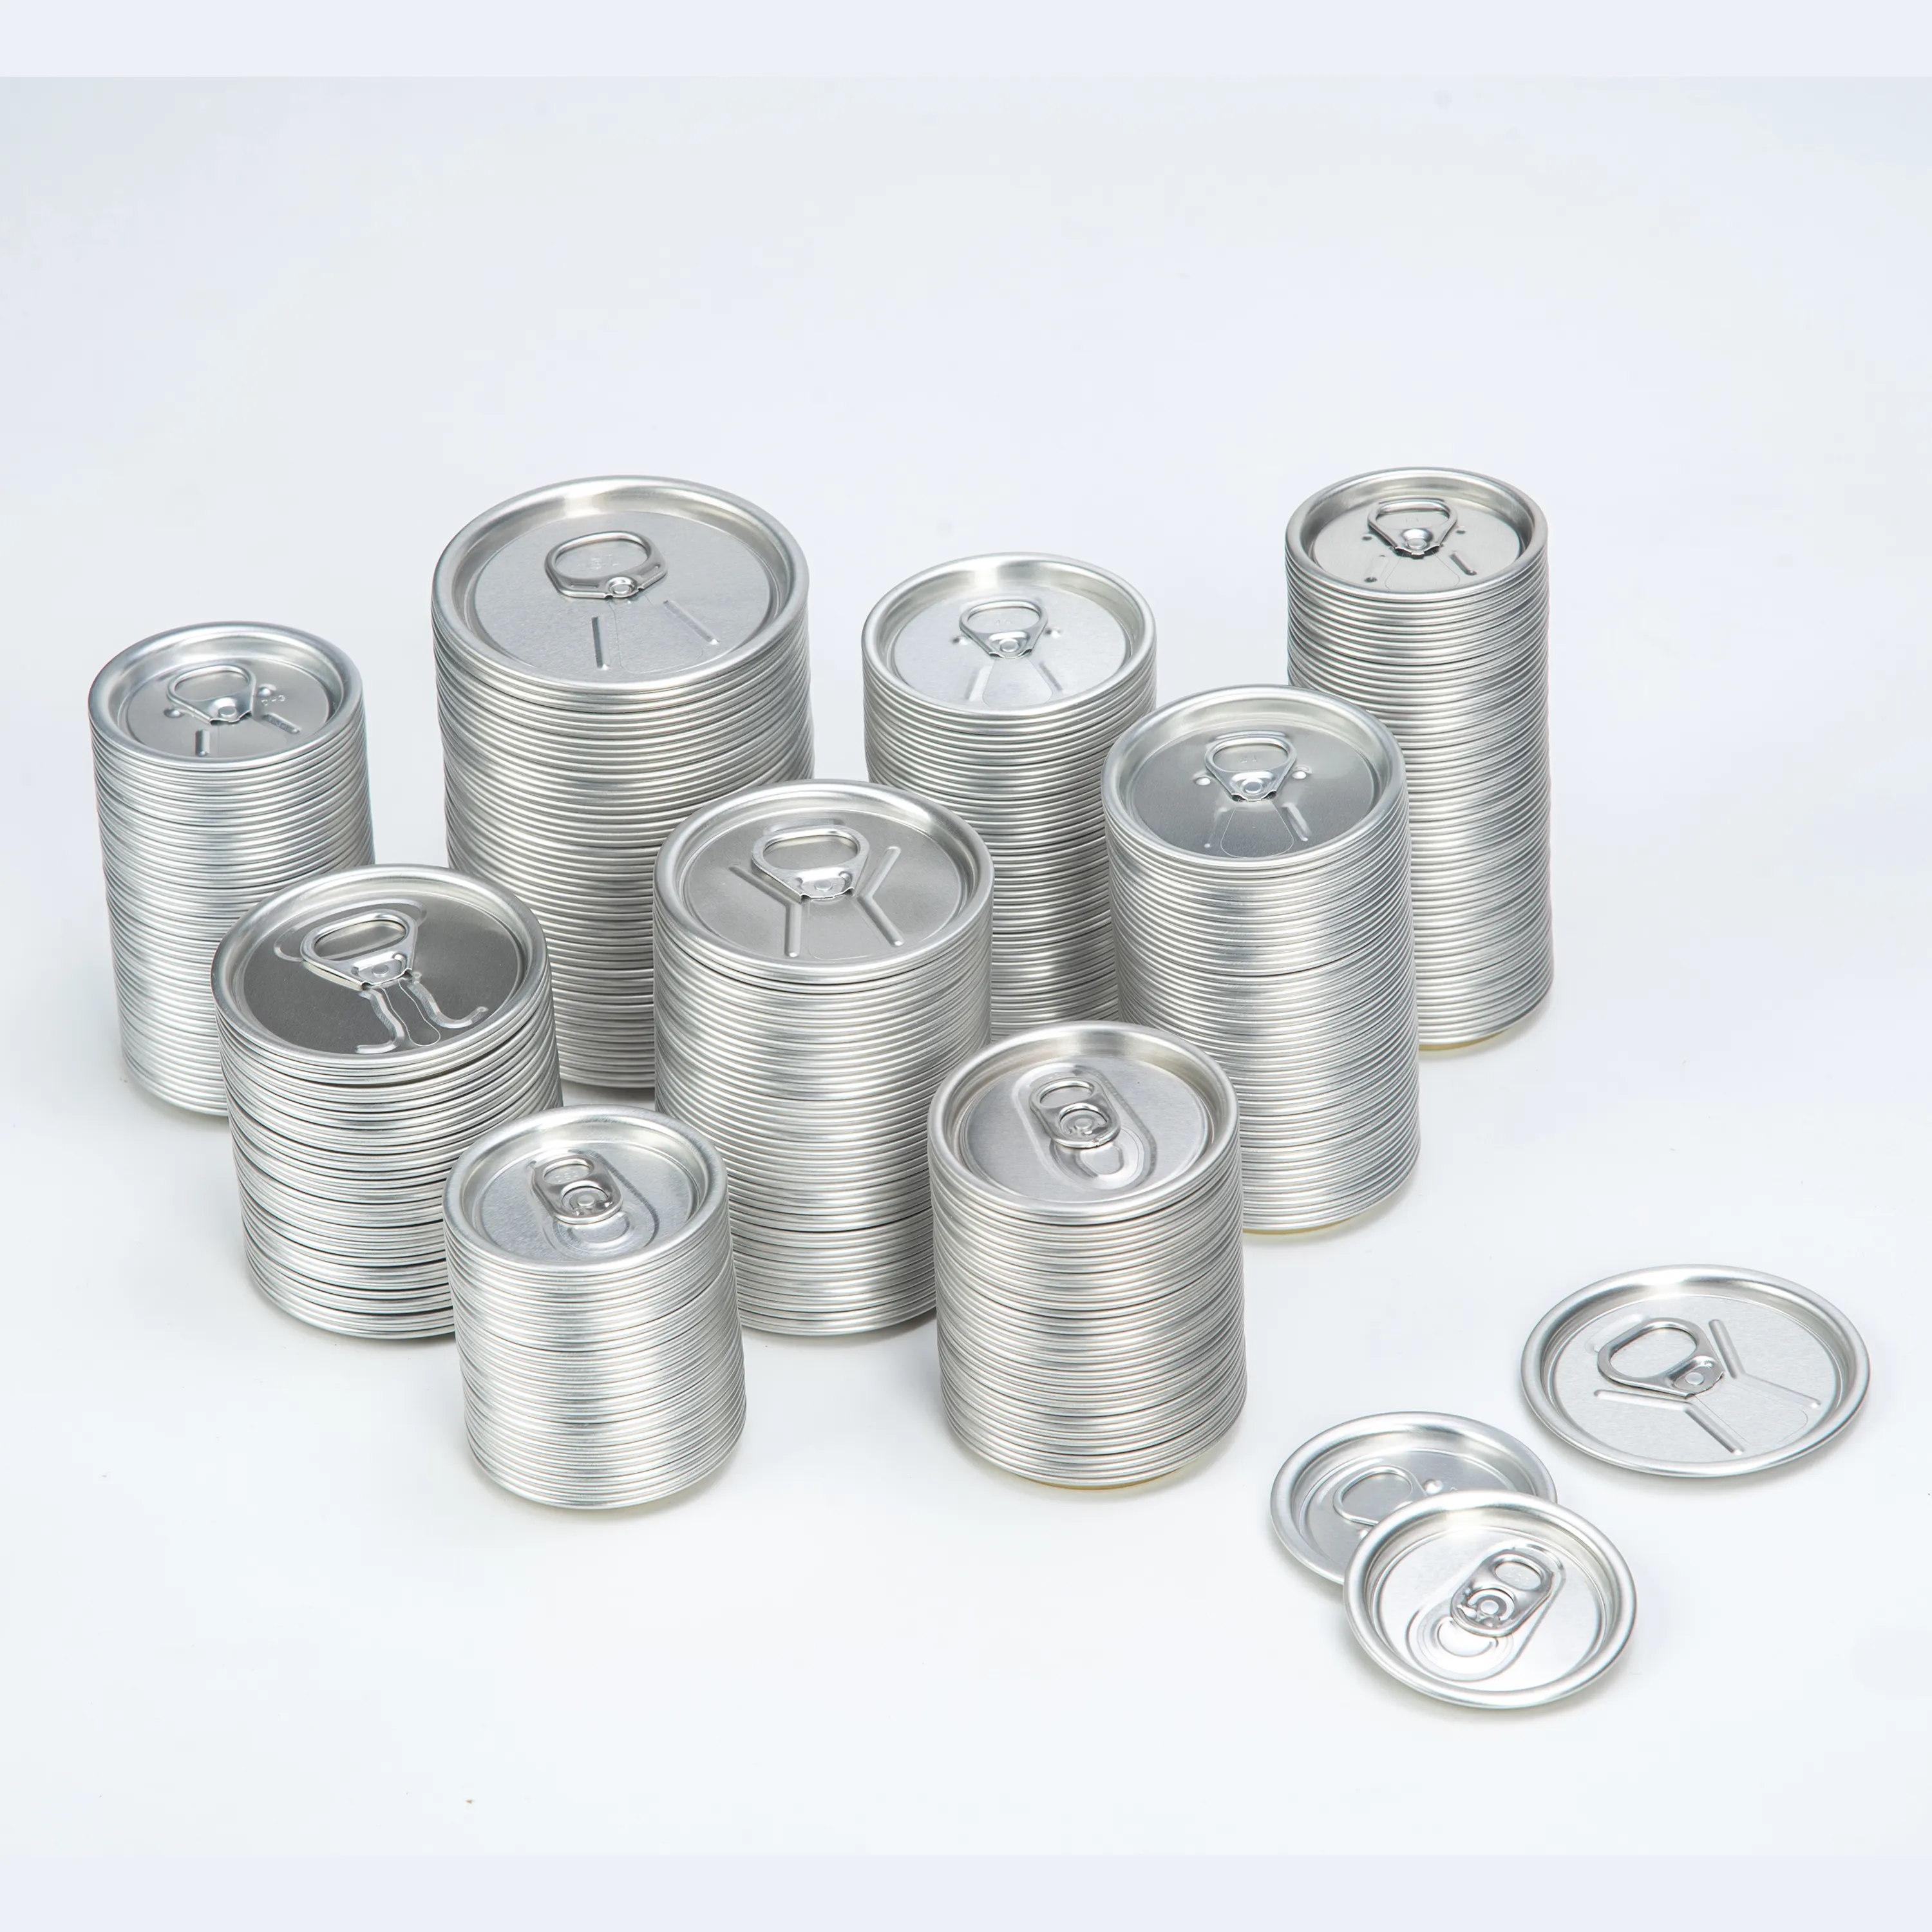 Latas de aluminio para bebidas y refrescos, latas de papel extraíbles, tapa, apertura completa, tapas abiertas para despegar